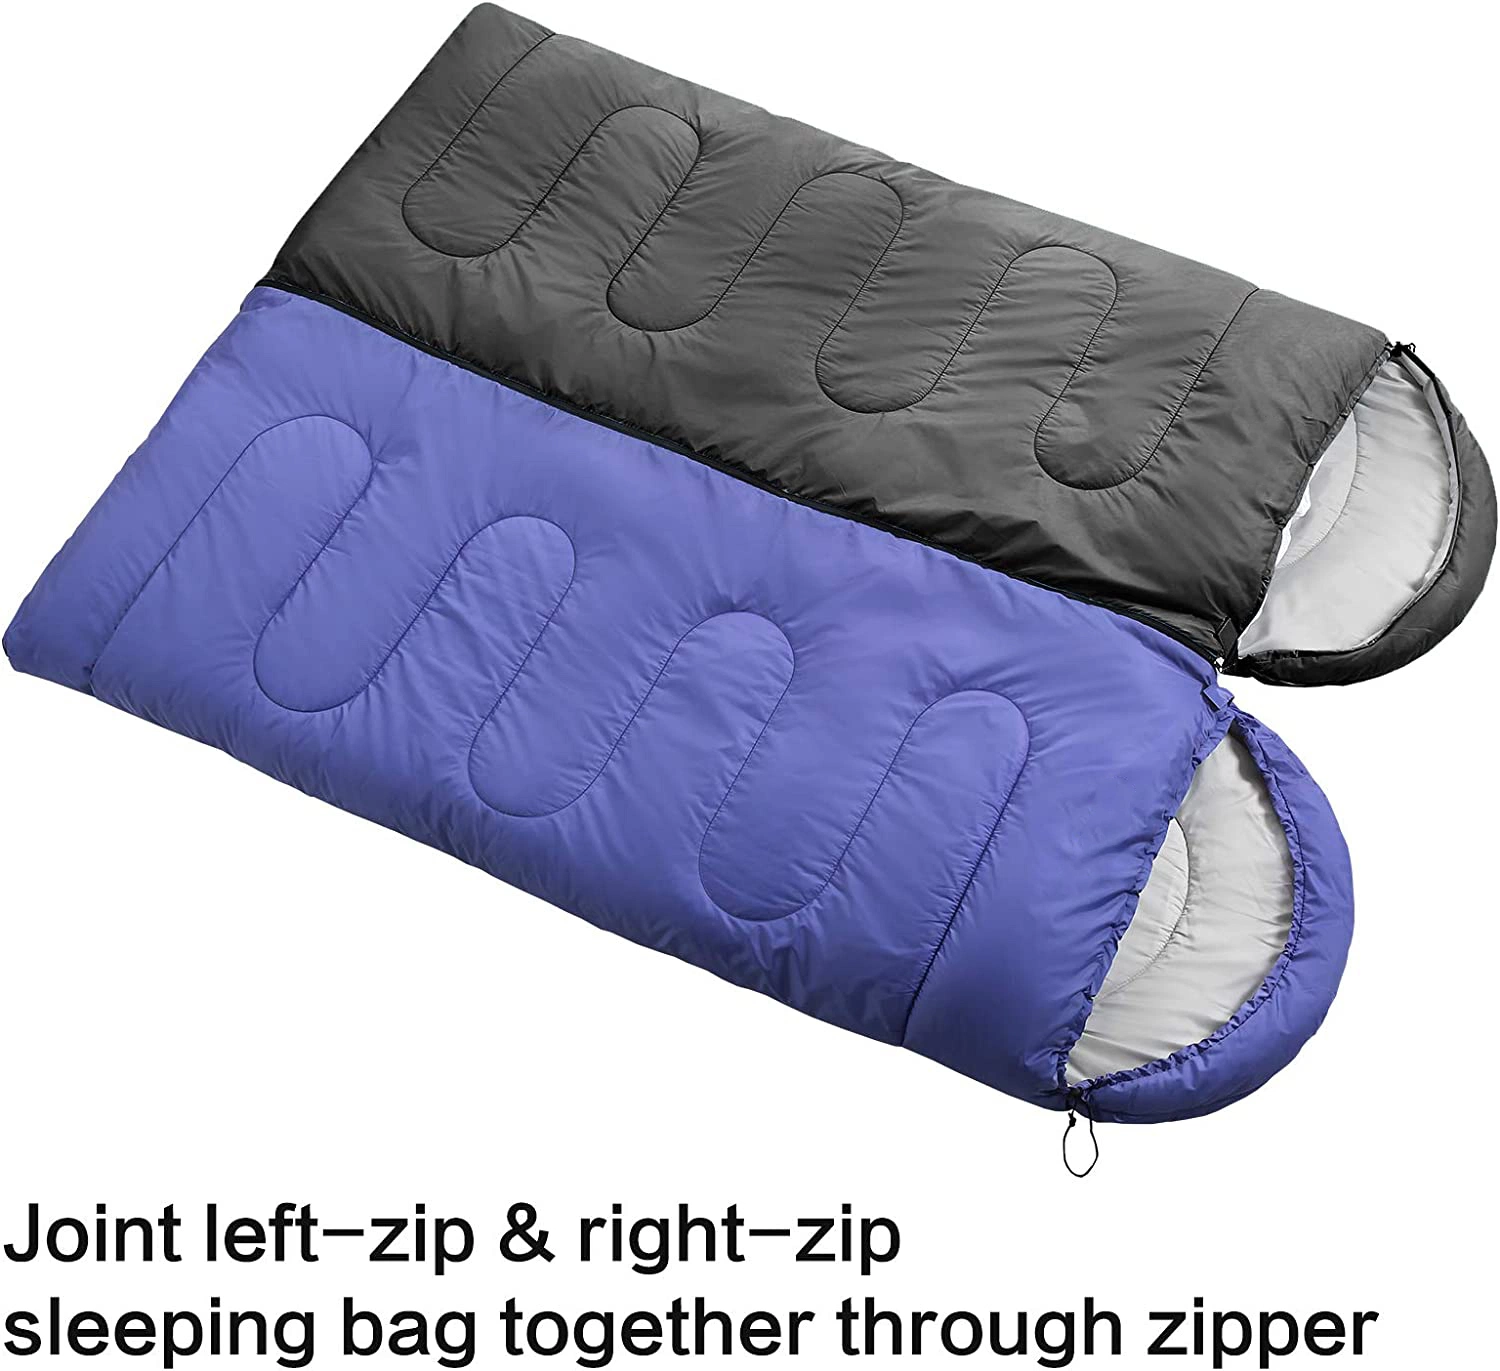 Sac de couchage en coton léger, compressible, portable, imperméable, personnalisé pour adulte, adapté à toutes les saisons, pour le camping et les voyages en solo.